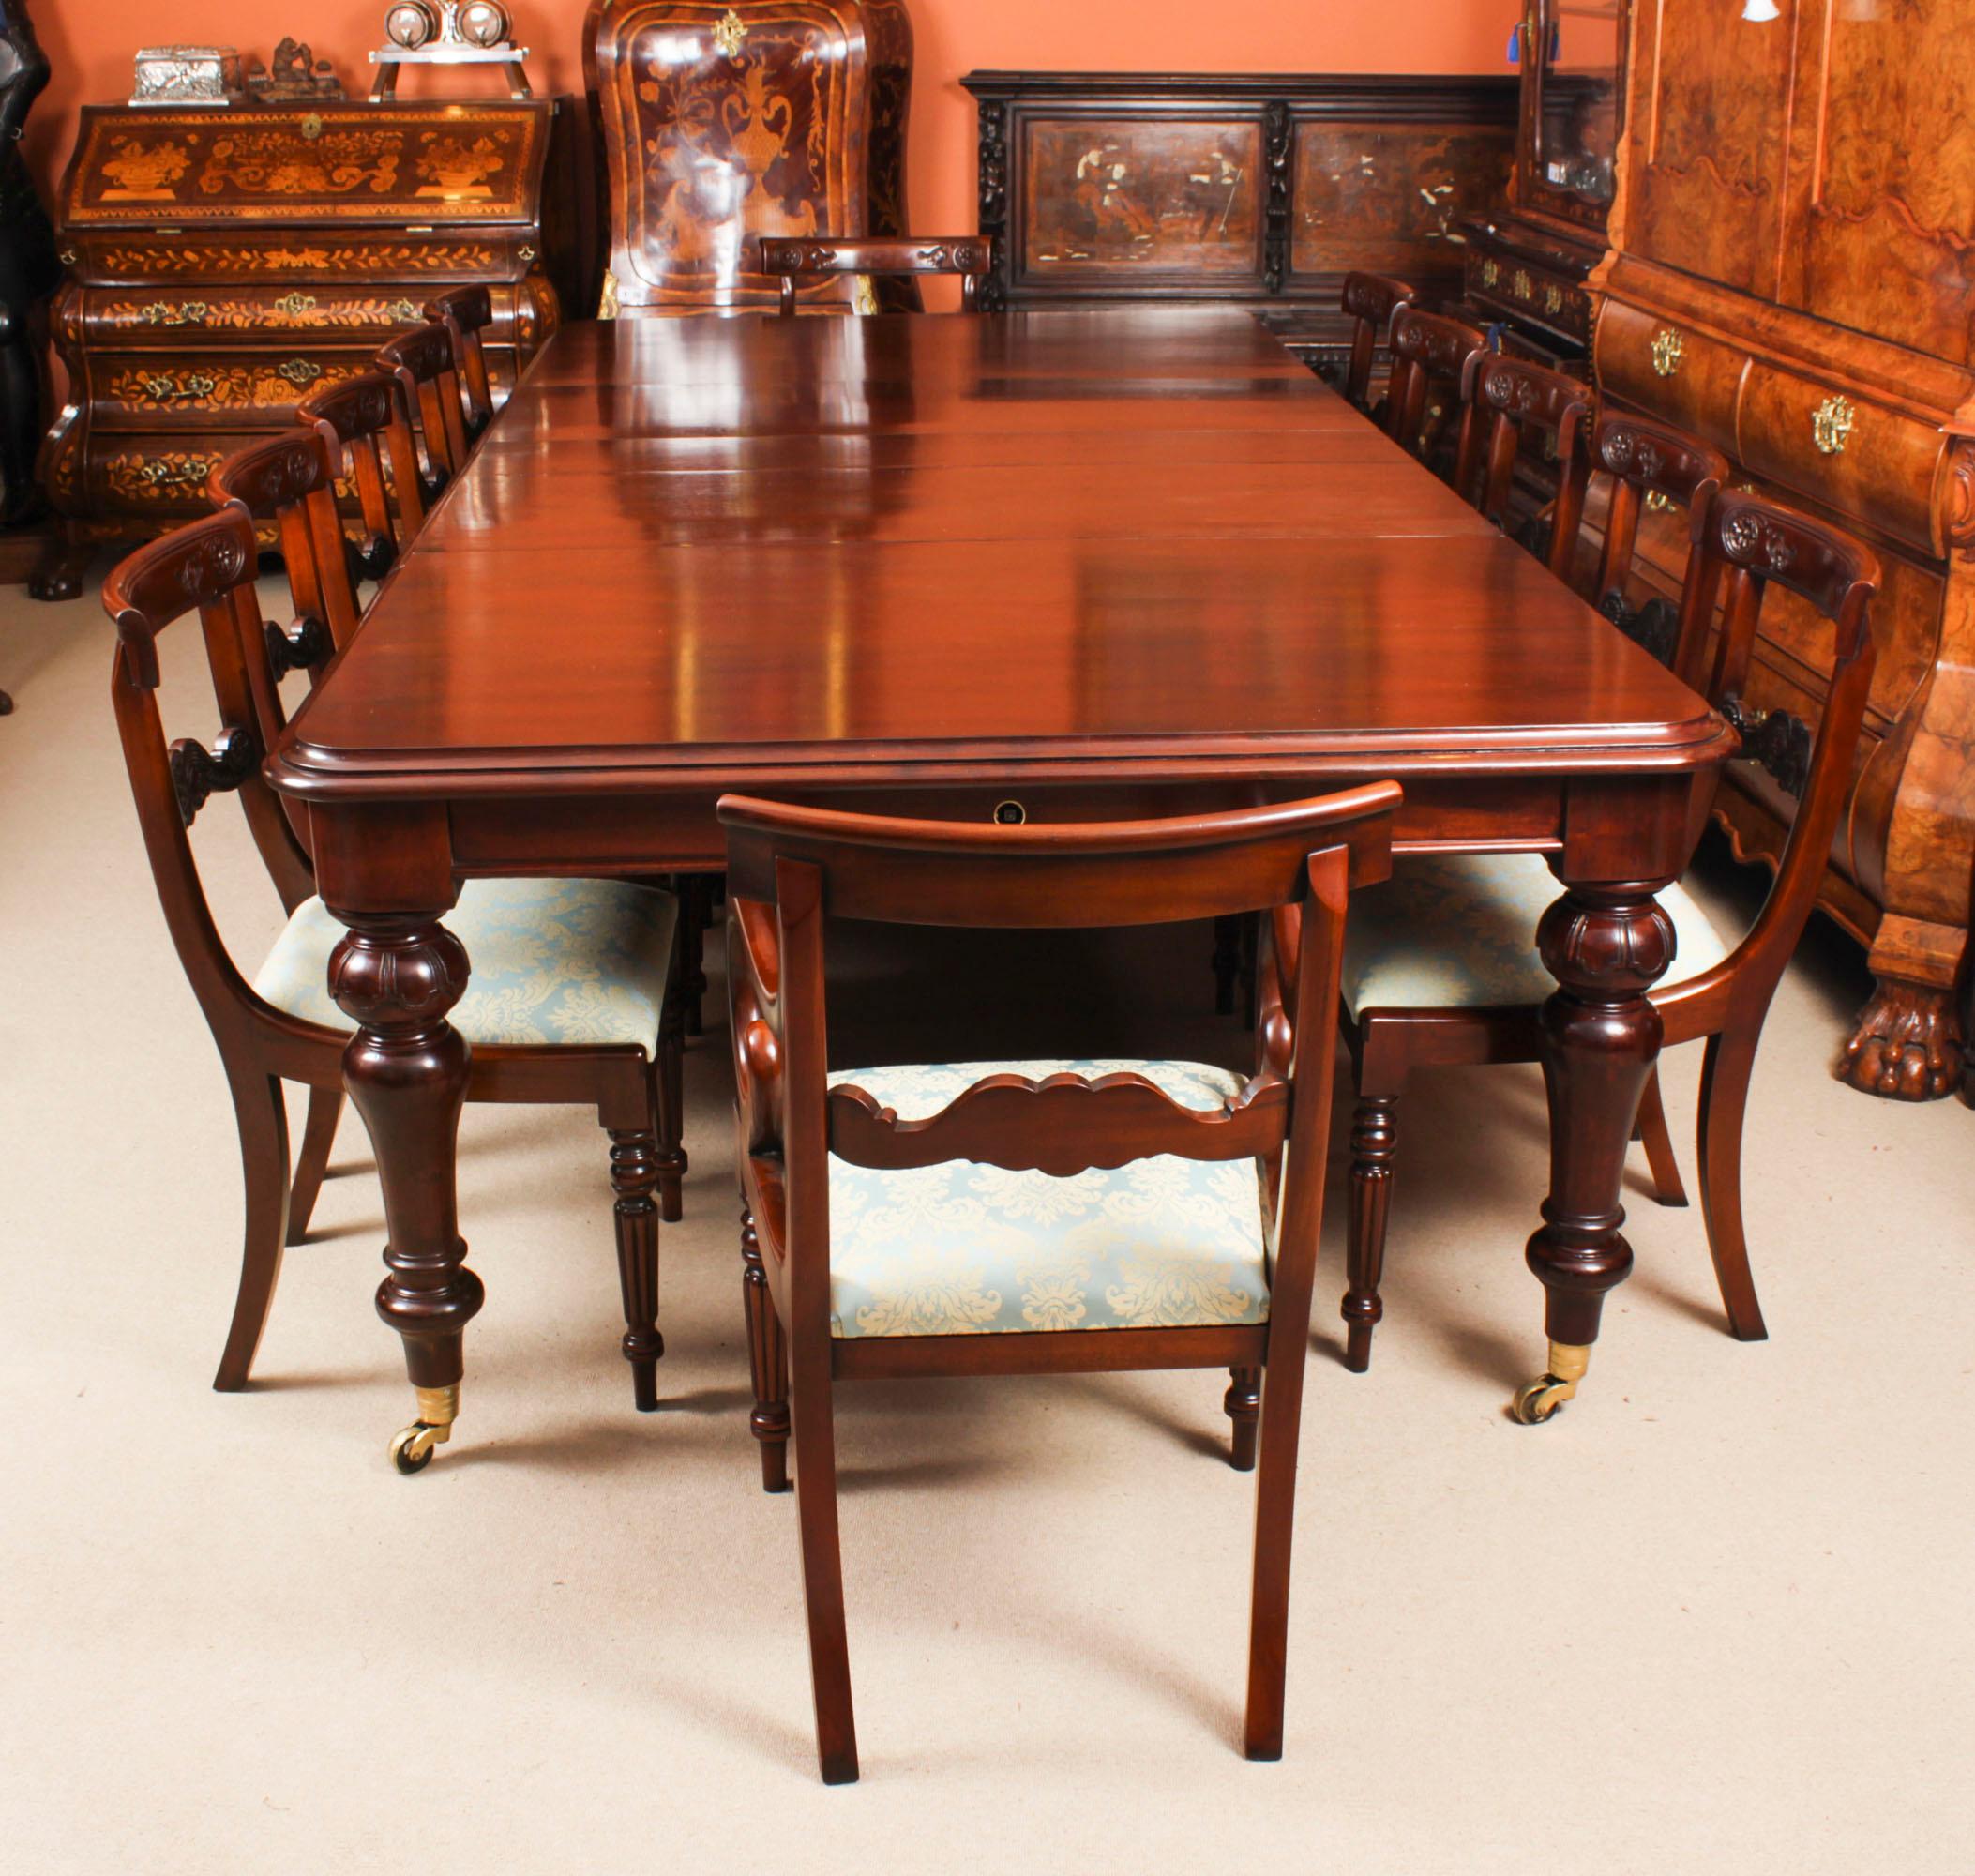 Il s'agit d'une fantastique  Ensemble de salle à manger comprenant une table de salle à manger antique William IV, datant de 1835,  avec un jeu de dix barres de dos  chaises de salle à manger, datant de la fin de l'année  20e siècle. 

La magnifique